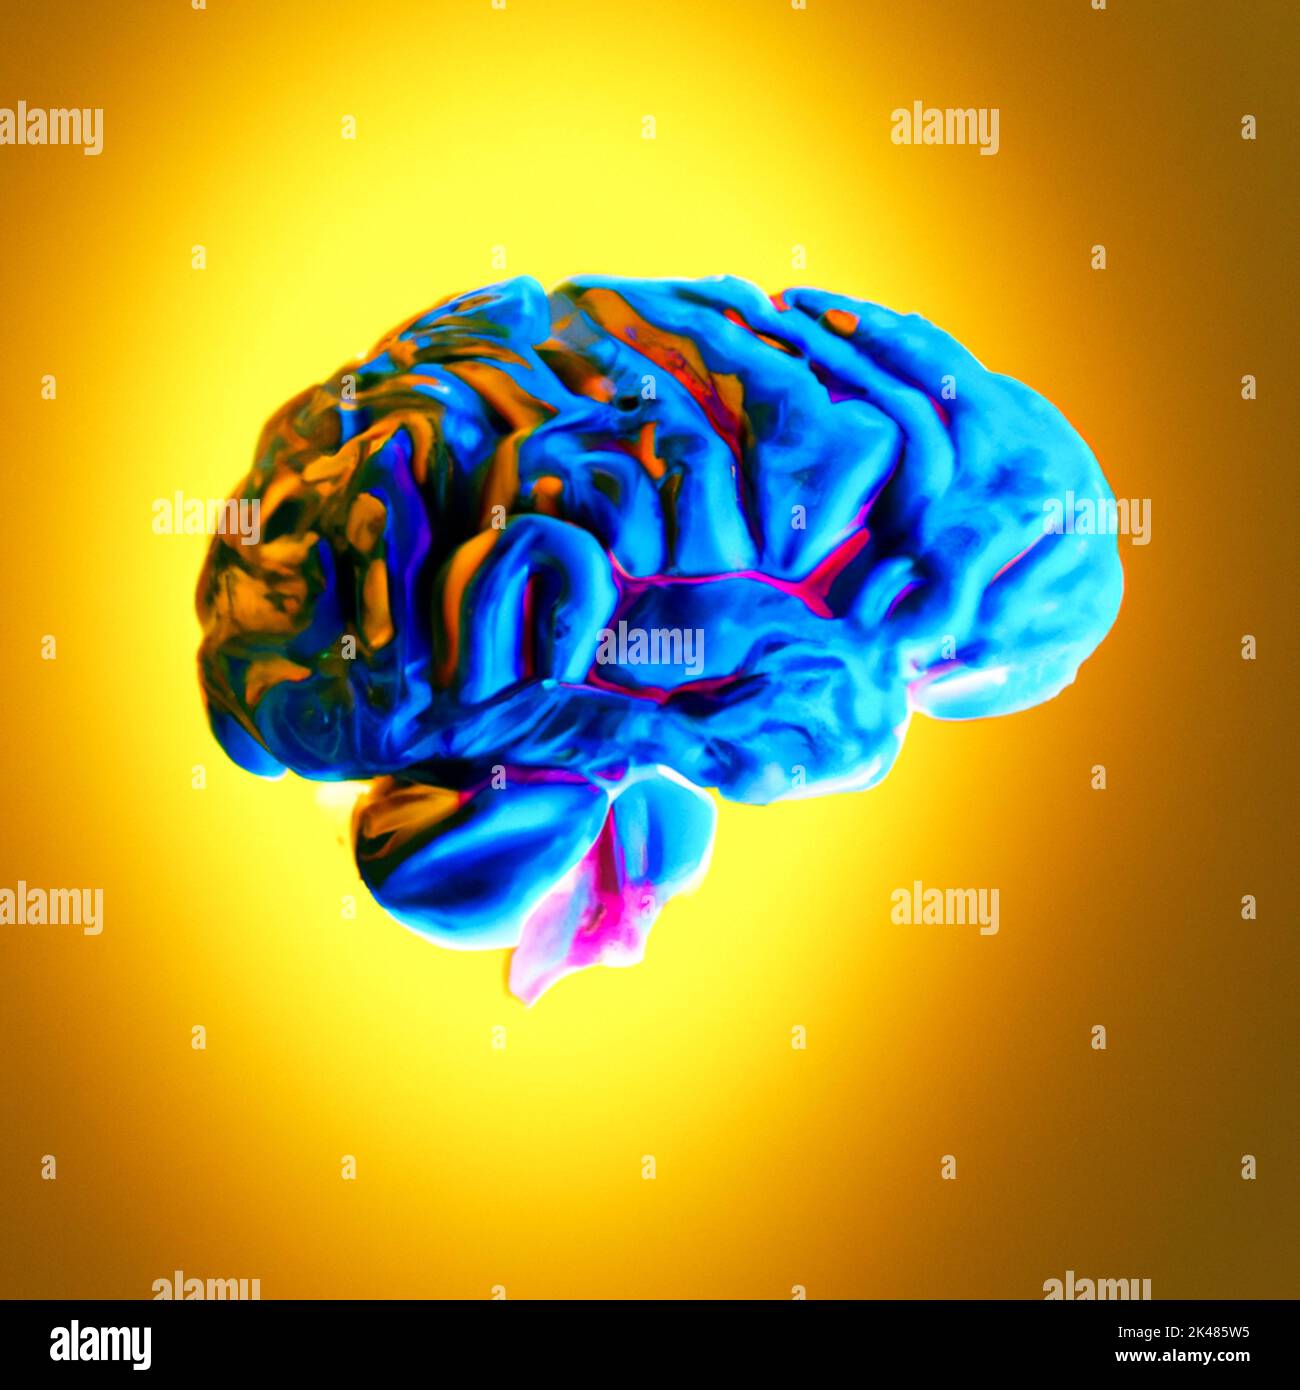 Frankreich, Paris am 26/09/2022. Digitale Illustration eines Gehirns. Bild erstellt mit einem künstlichen Intelligenz-Programm von Martin Bertrand. Frankreich, Paris Stockfoto